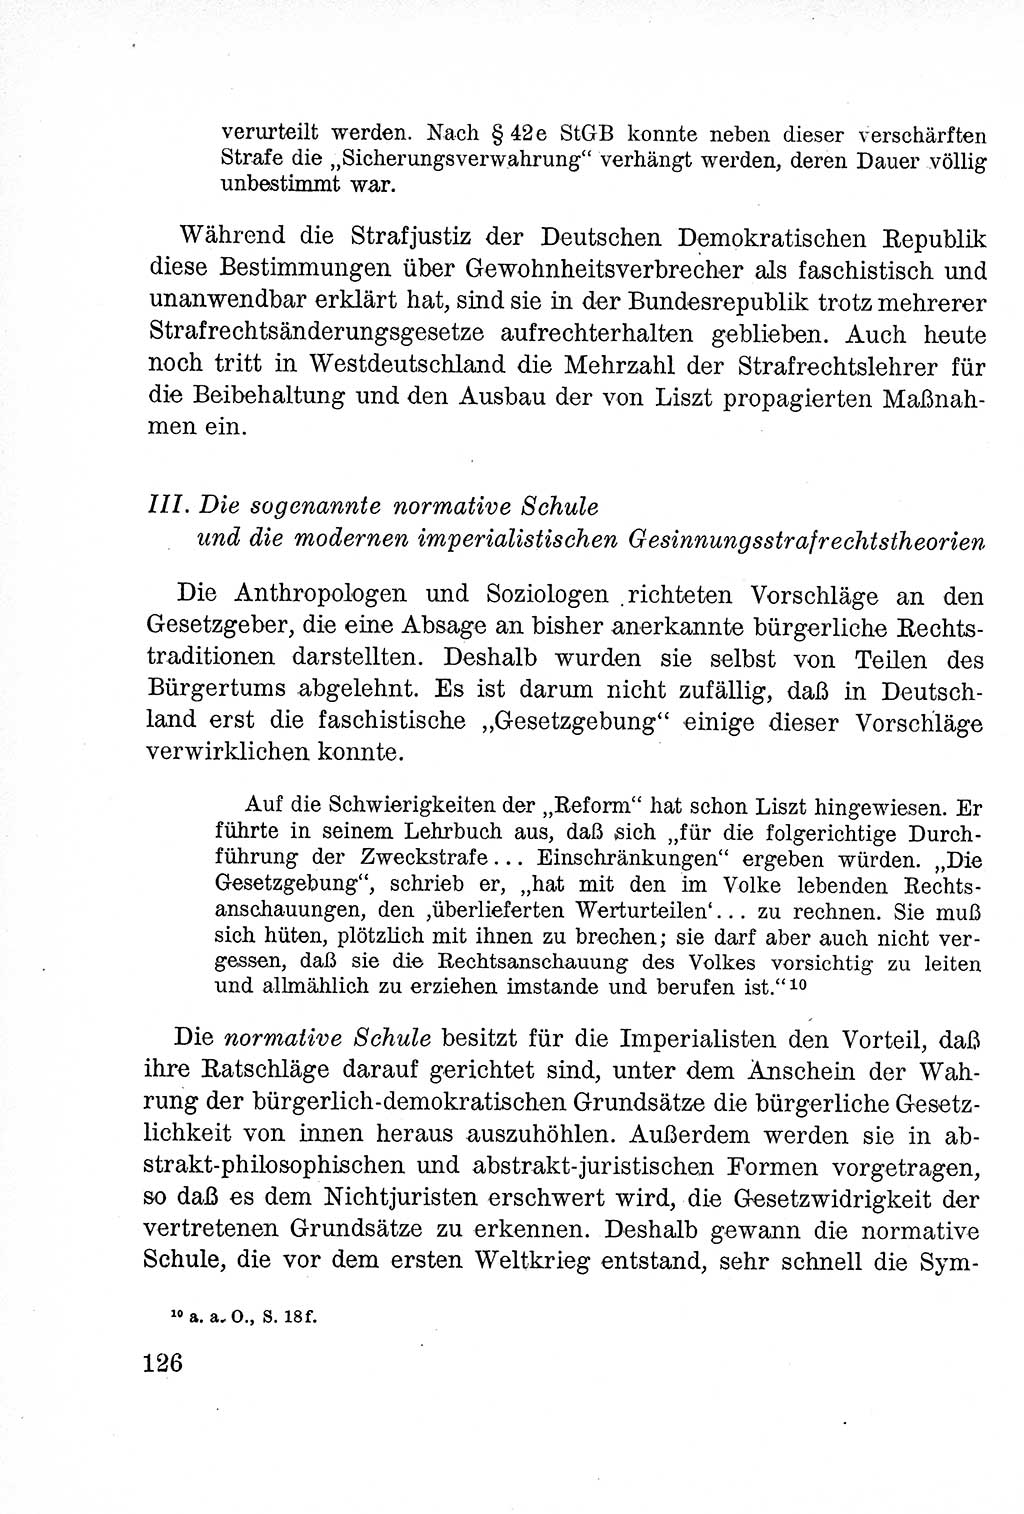 Lehrbuch des Strafrechts der Deutschen Demokratischen Republik (DDR), Allgemeiner Teil 1957, Seite 126 (Lb. Strafr. DDR AT 1957, S. 126)